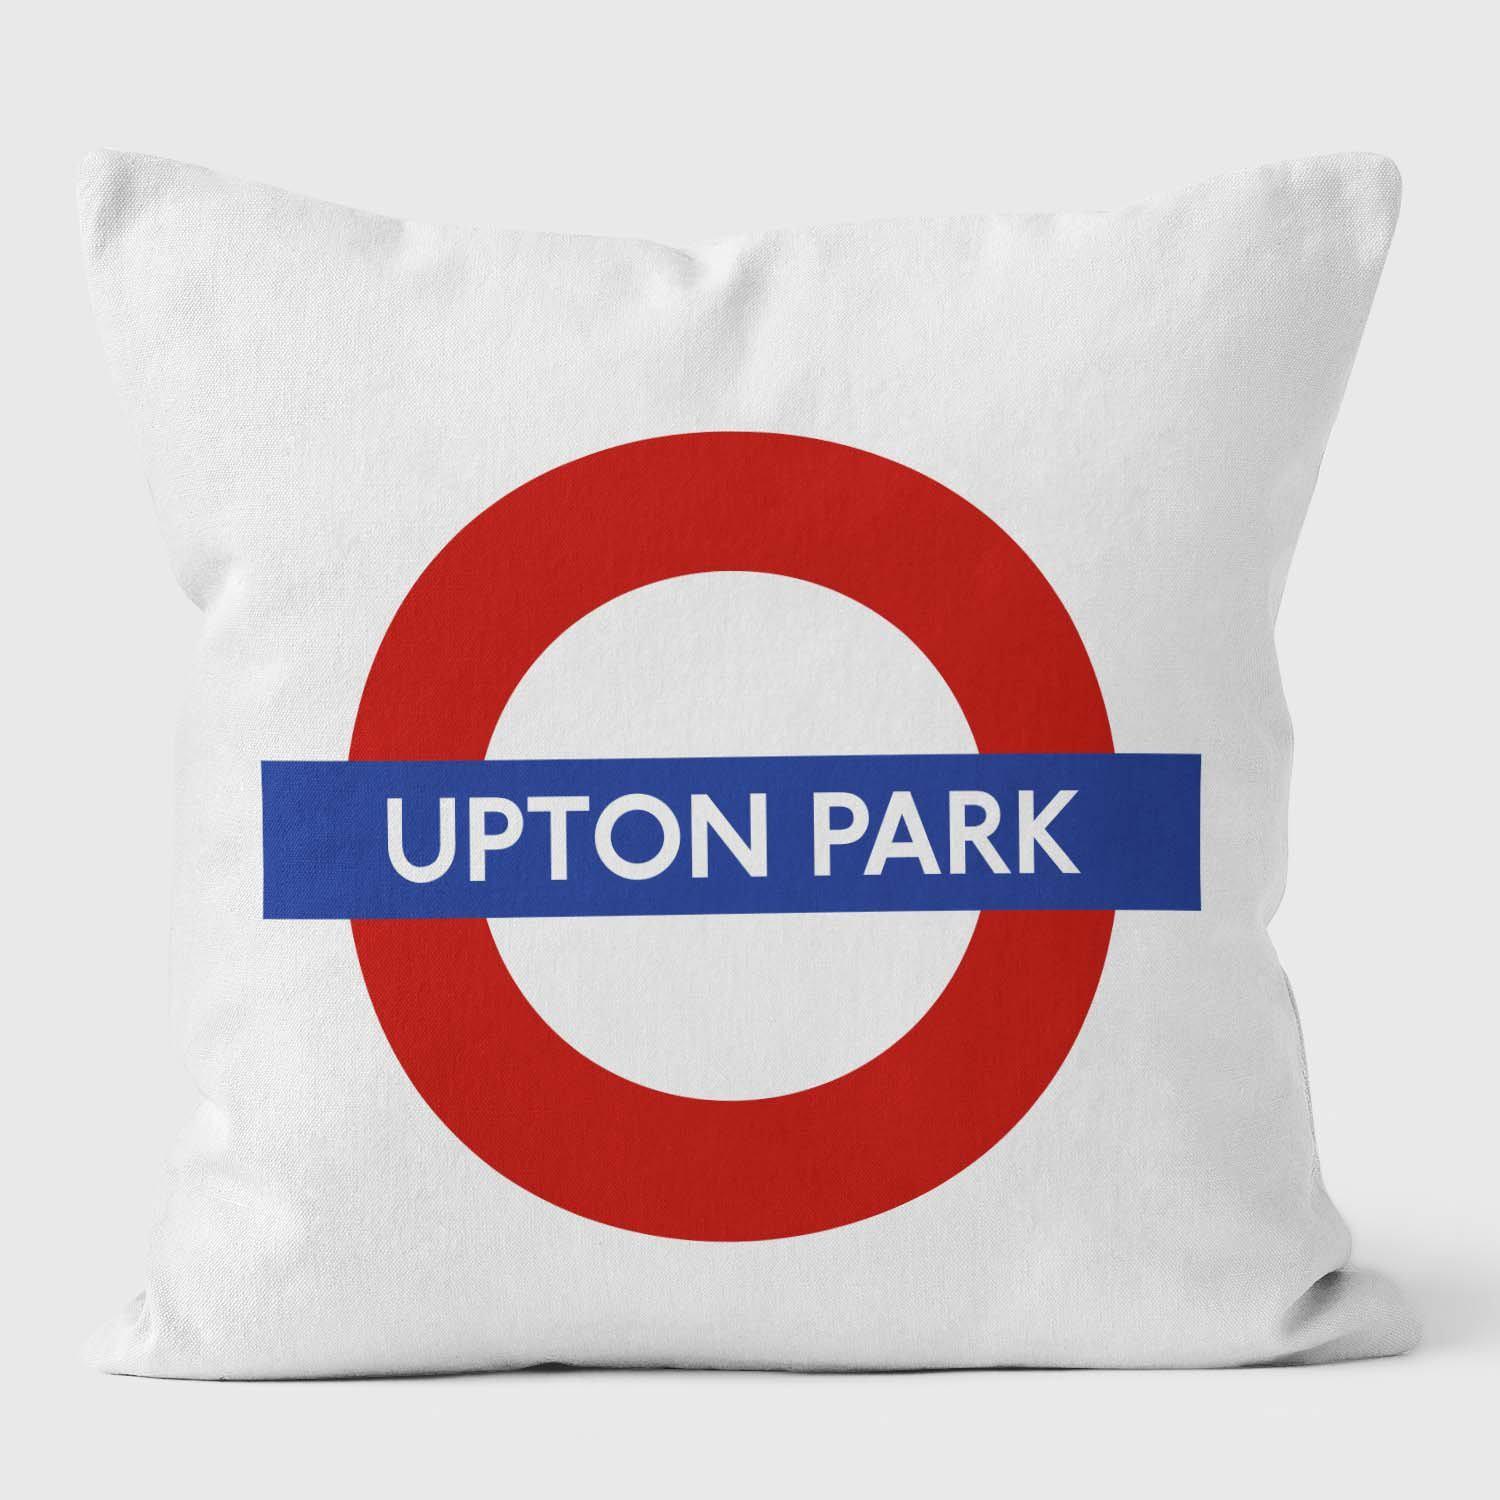 Upton Park London Underground Tube Station Roundel Cushion - Handmade Cushions UK - WeLoveCushions